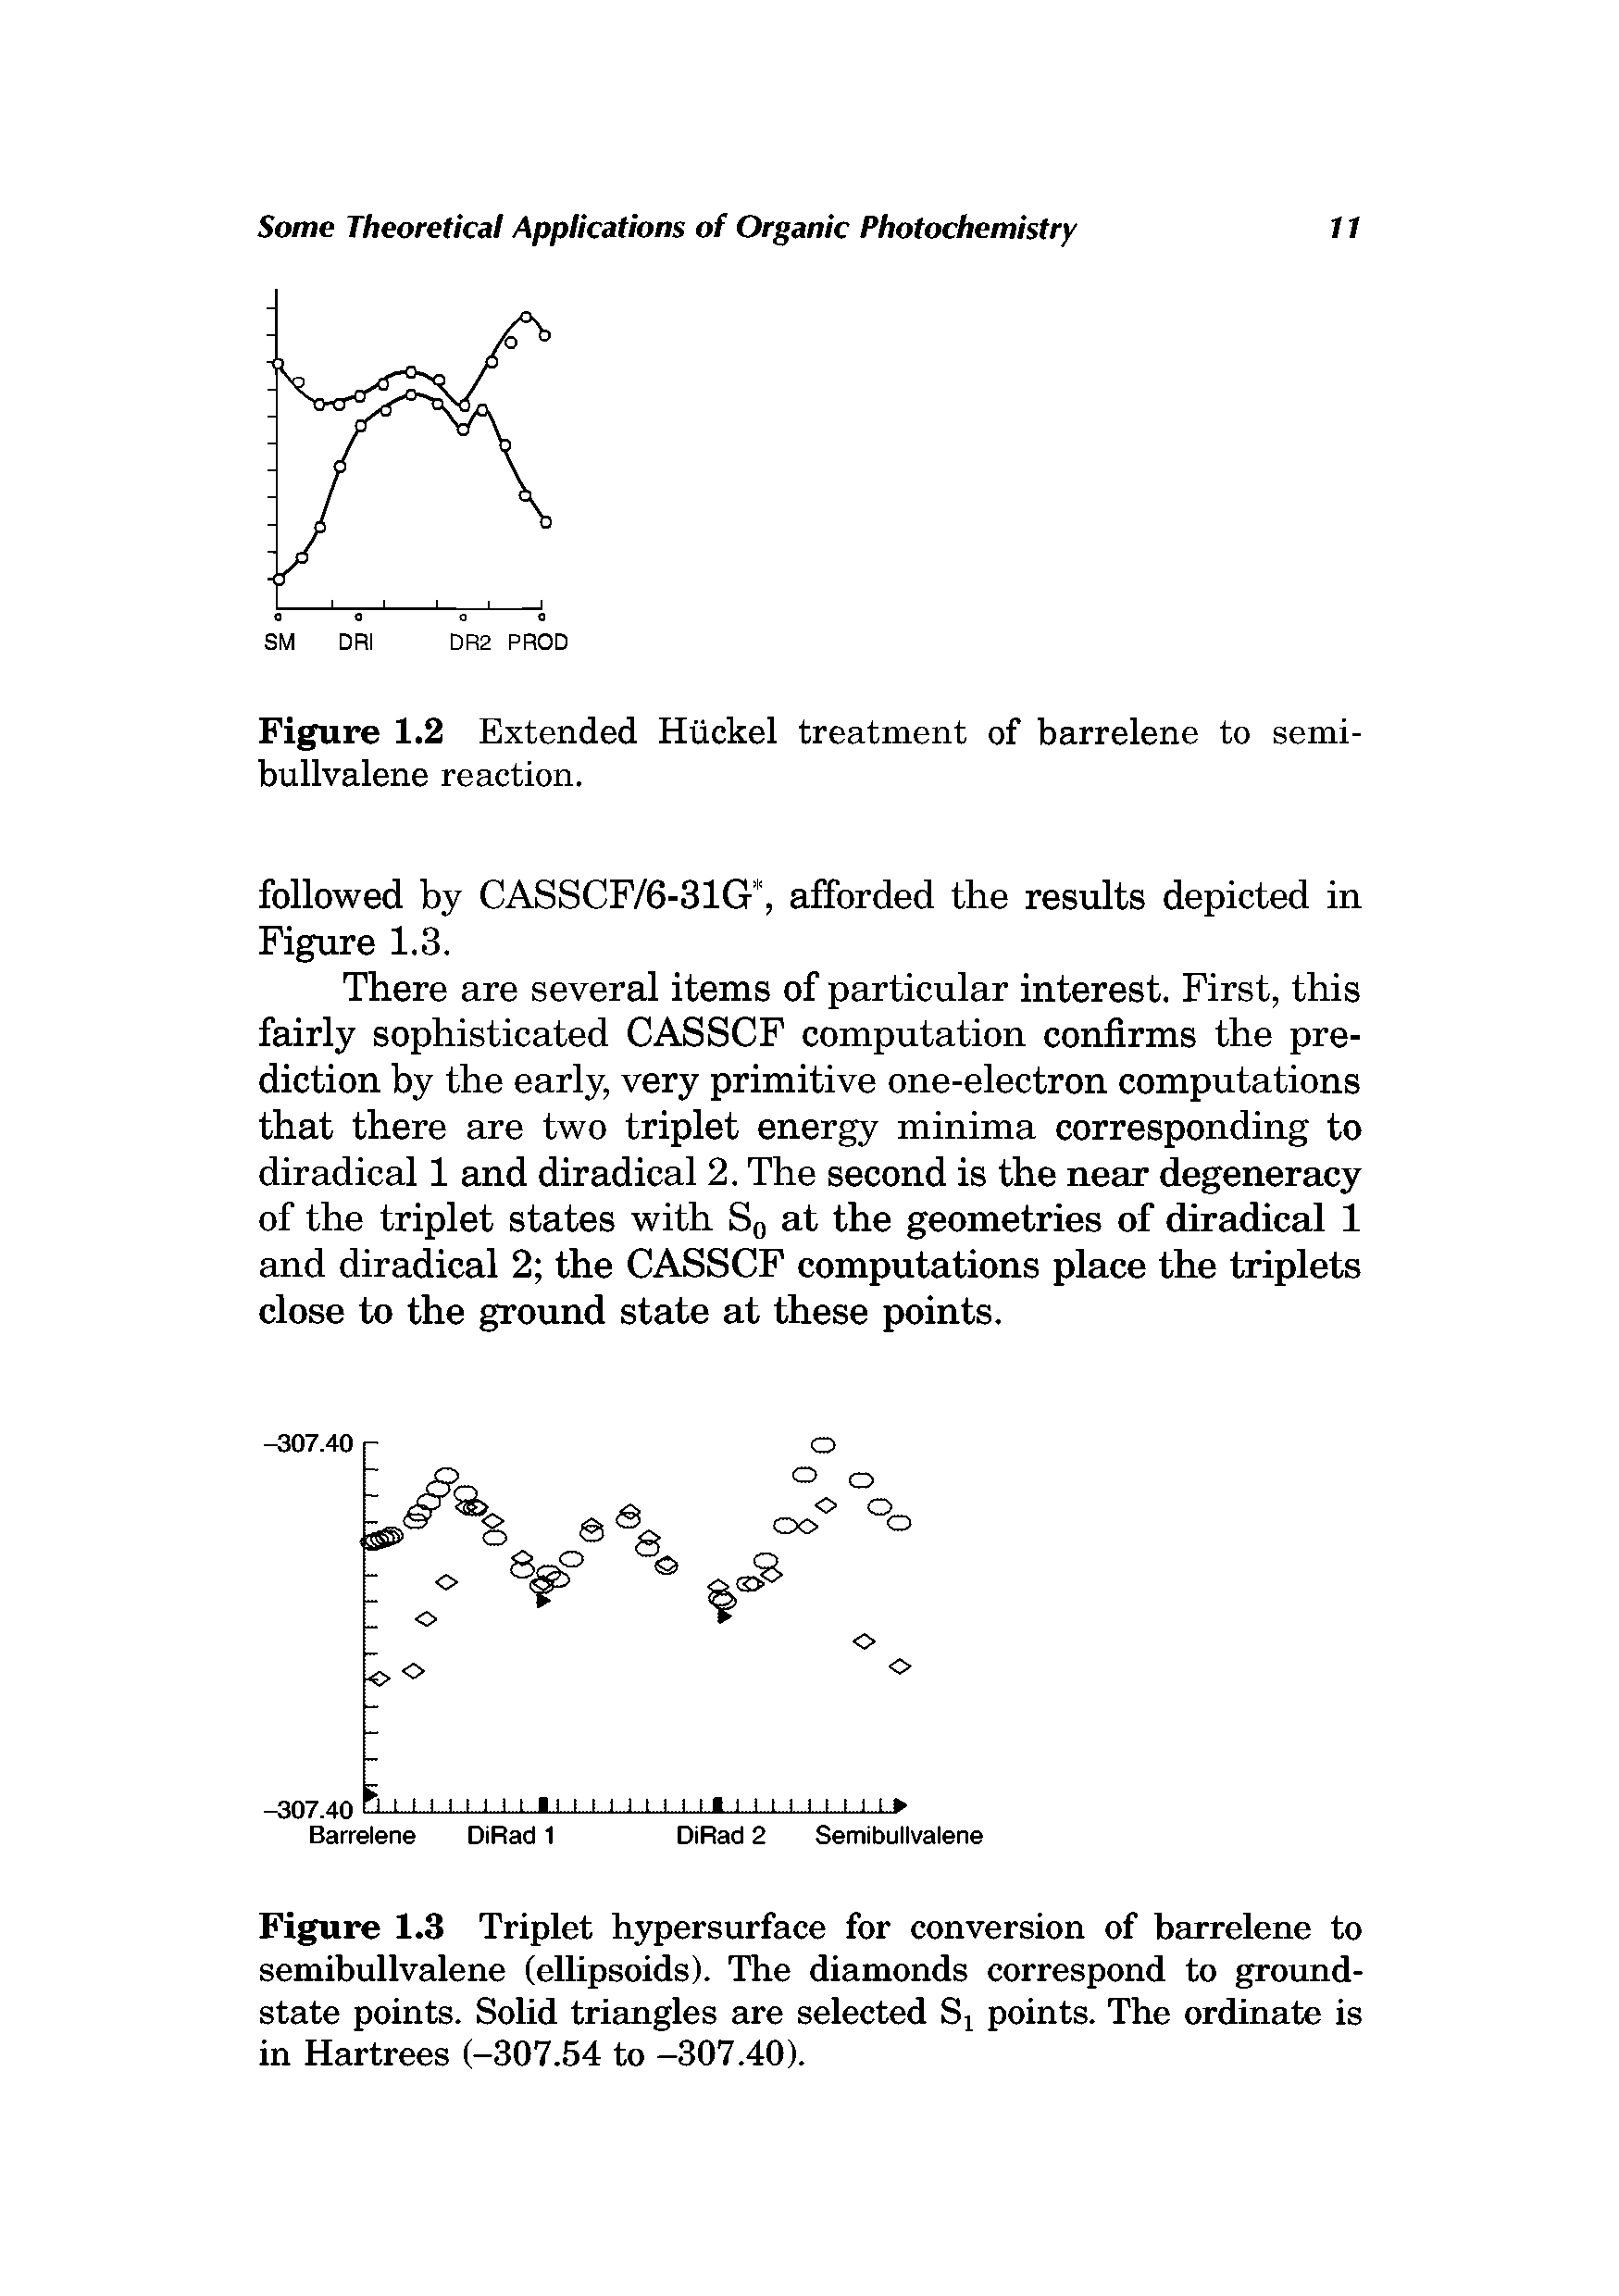 Figure 1.2 Extended Htickel treatment of barrelene to semi-bullvalene reaction.